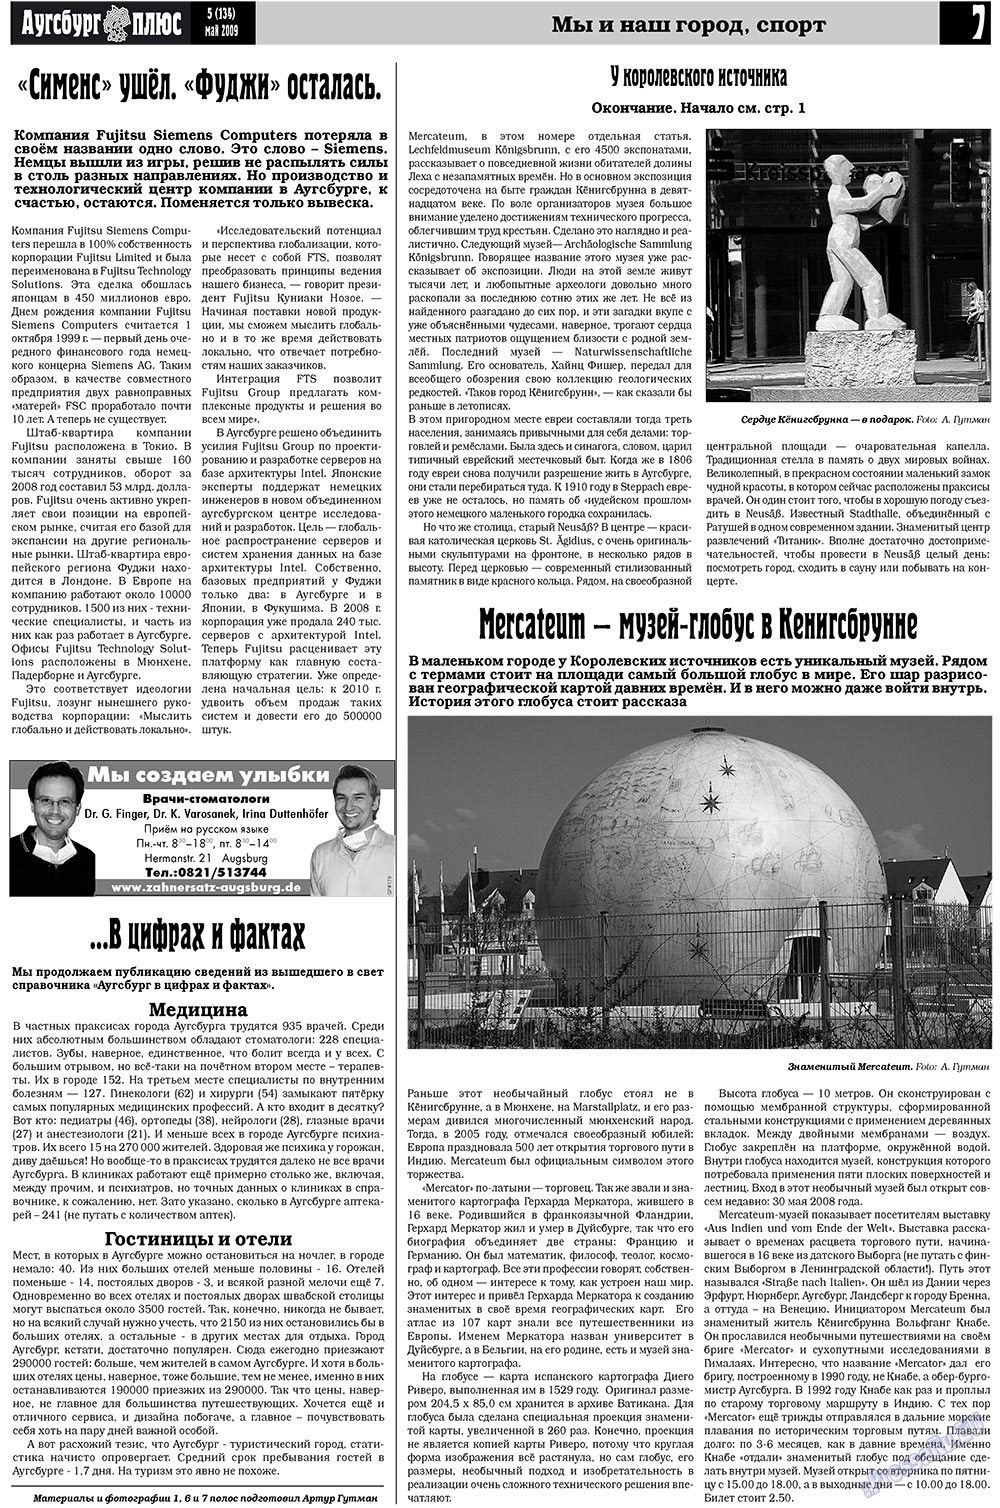 Германия плюс (газета). 2009 год, номер 5, стр. 9